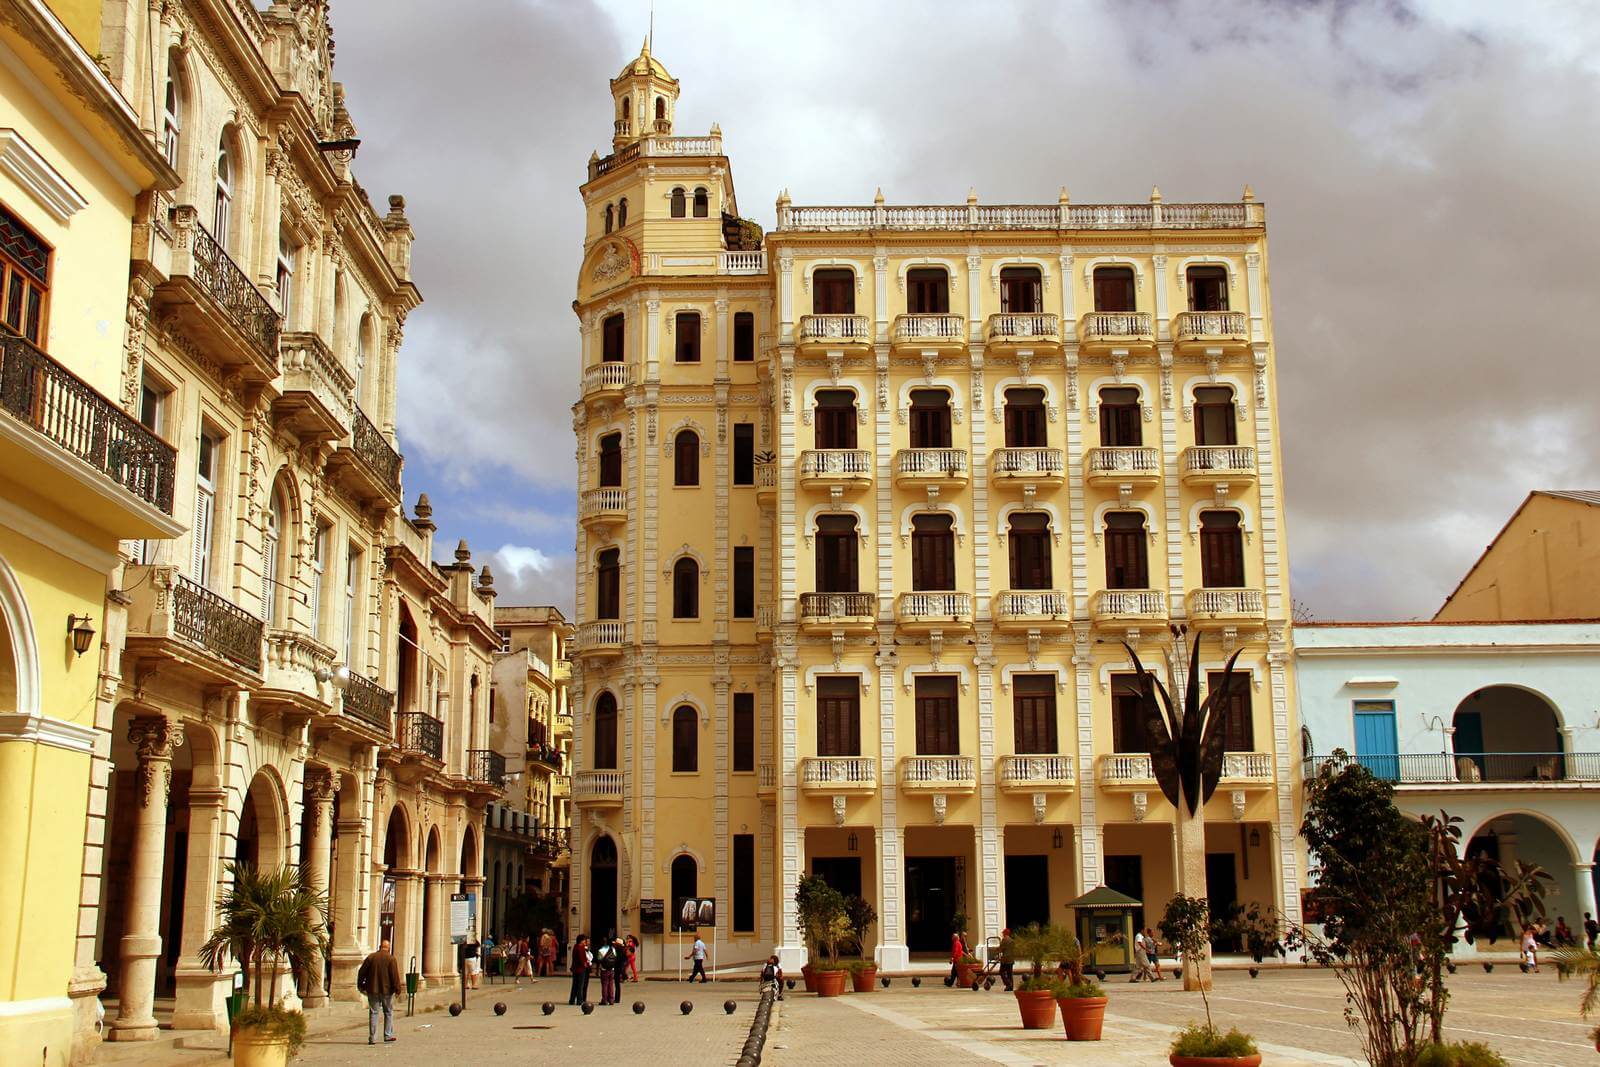 Foto: An der Plaza Vieja in Havanna - Lupe Reisen